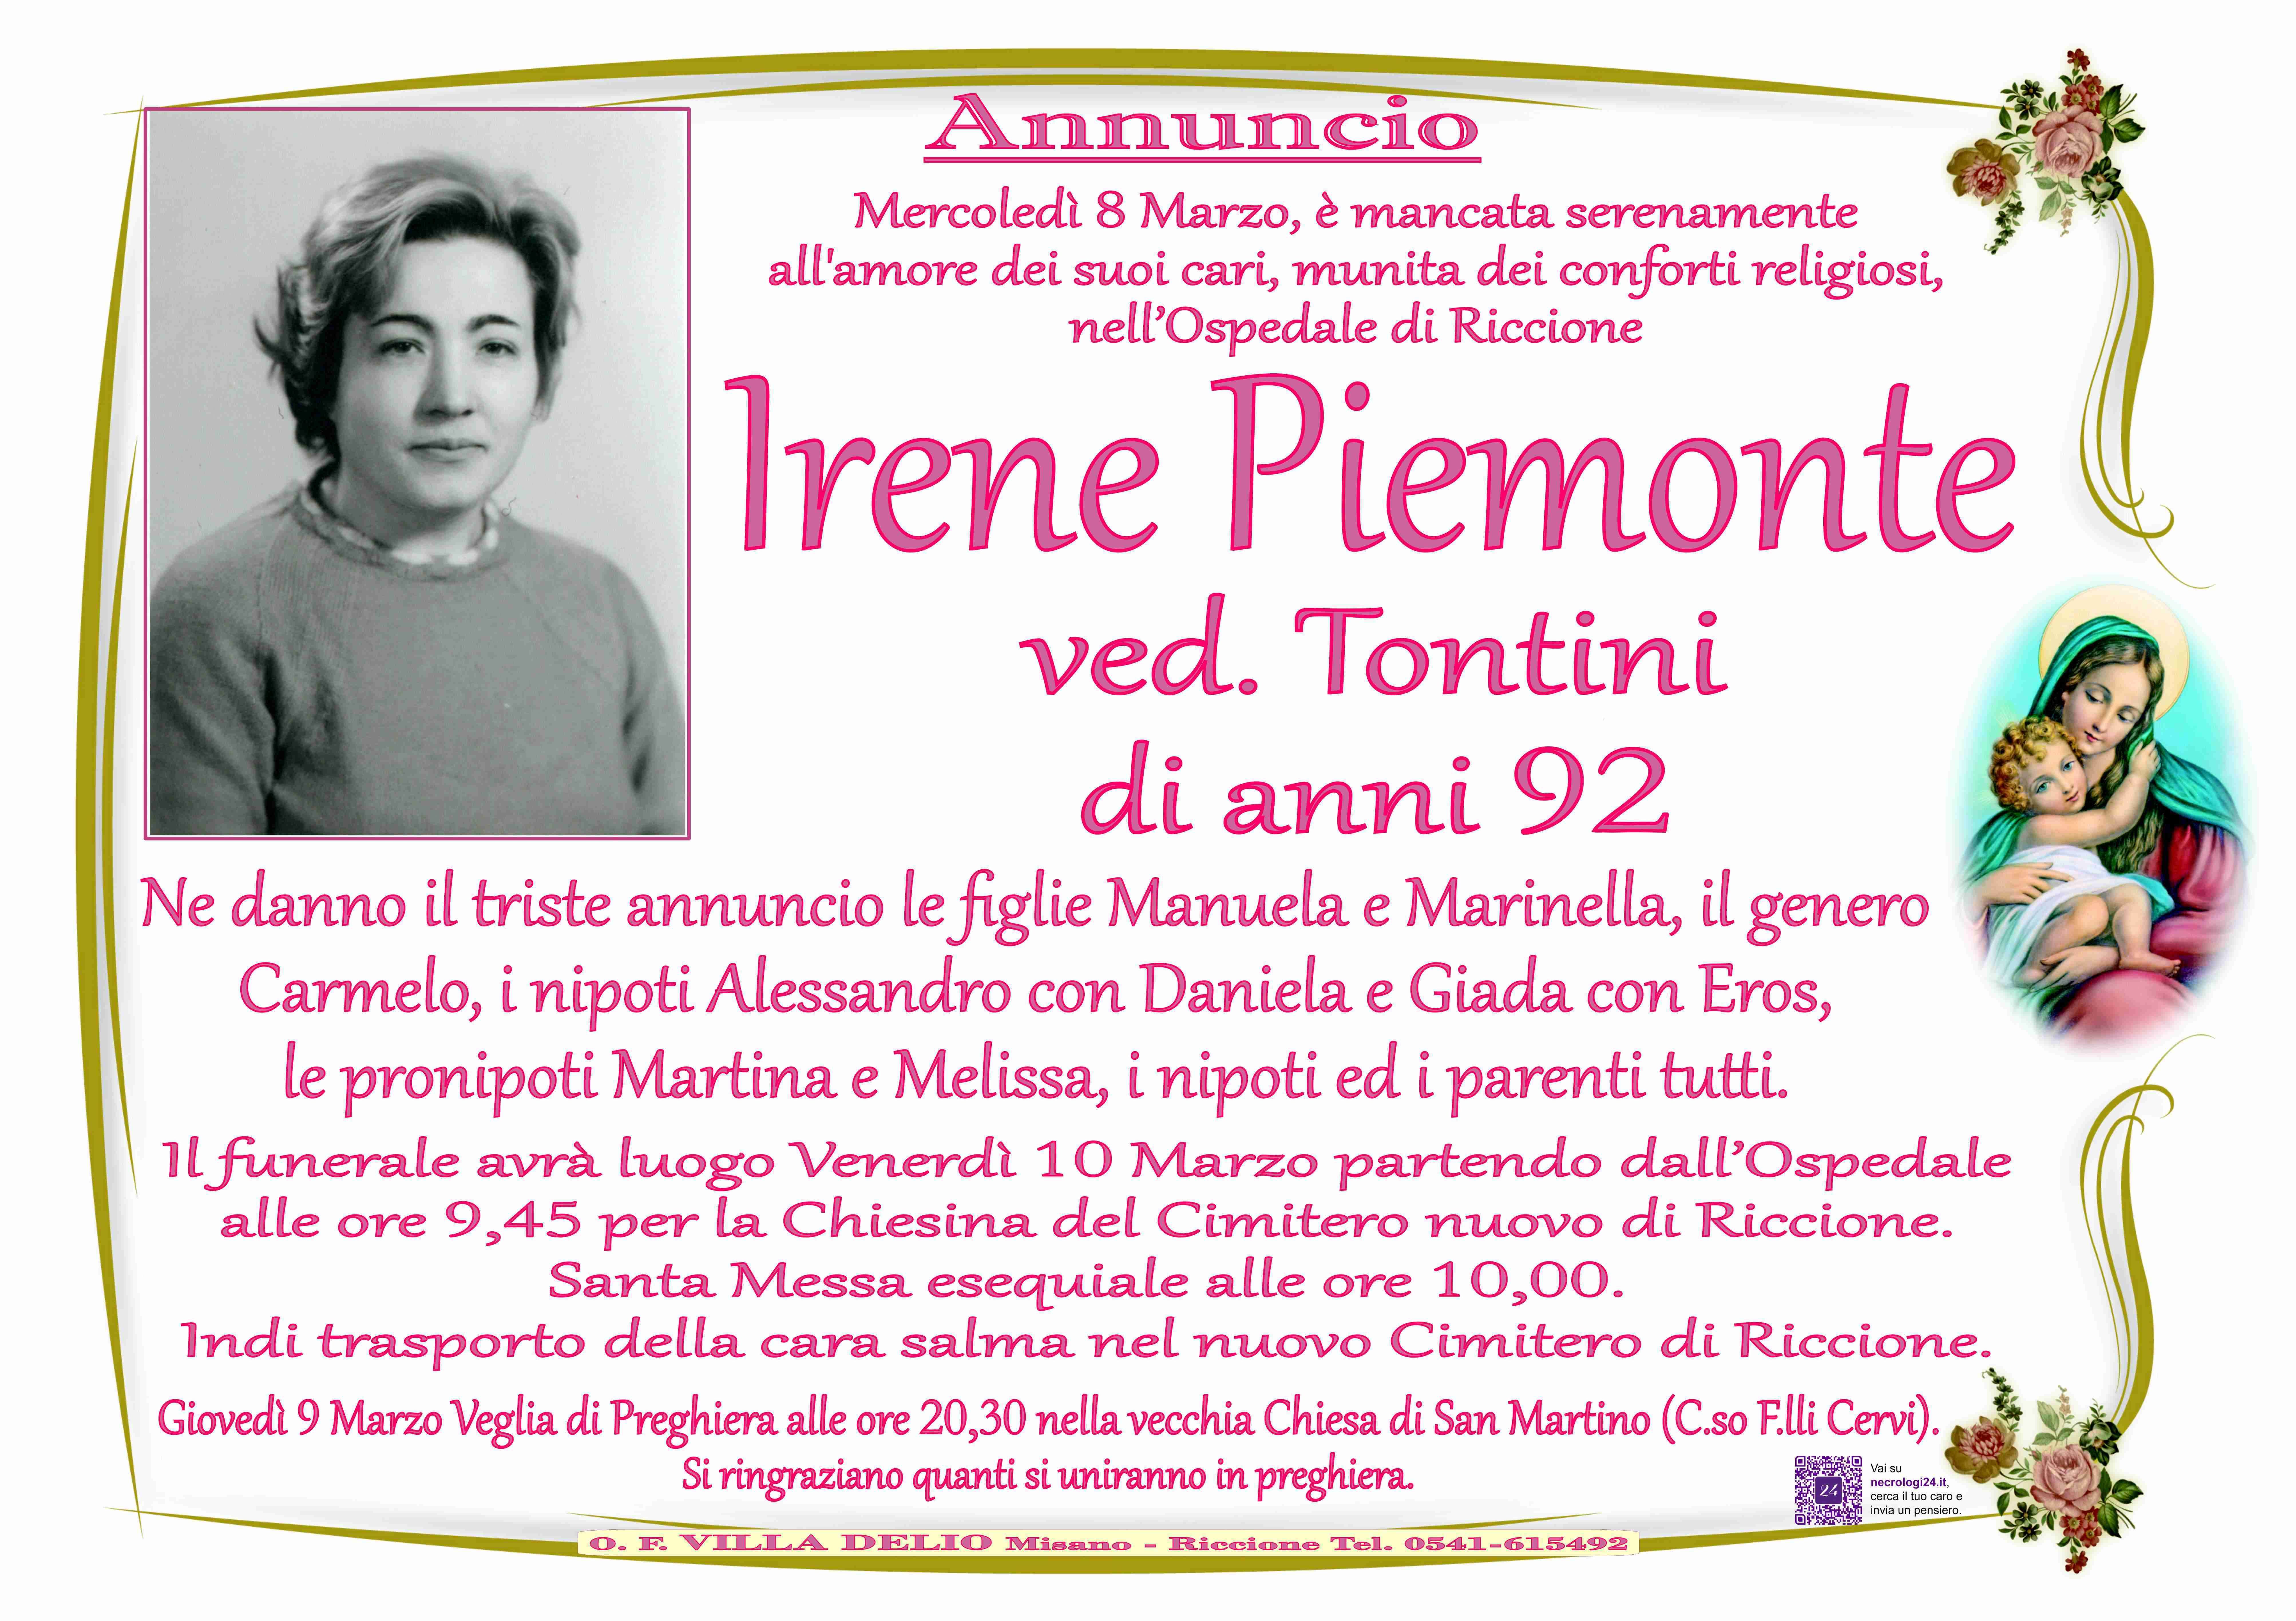 Irene Piemonte